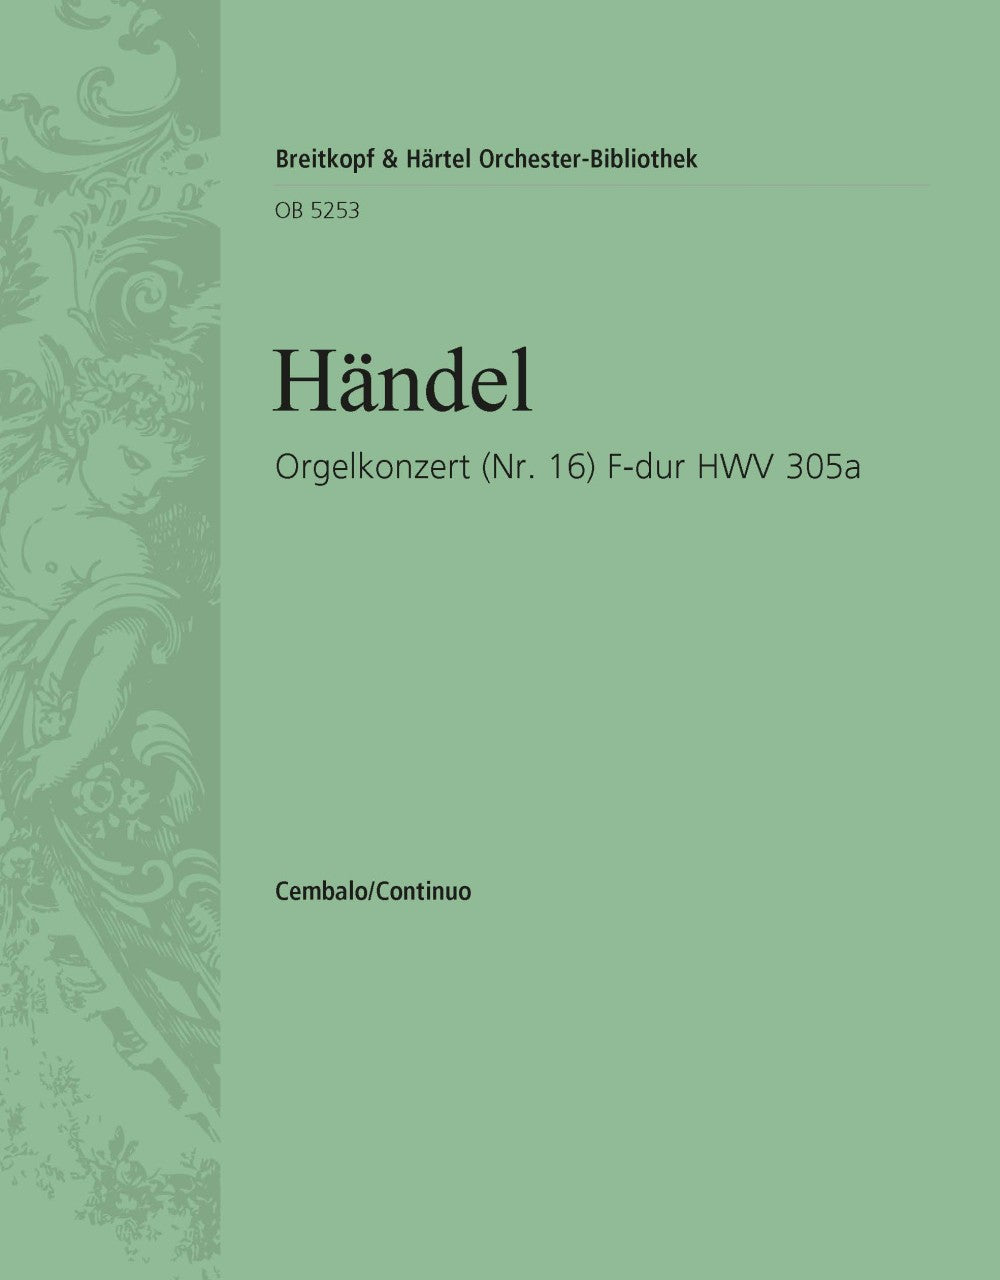 Handel: Organ Concerto in F Major, HWV 305a